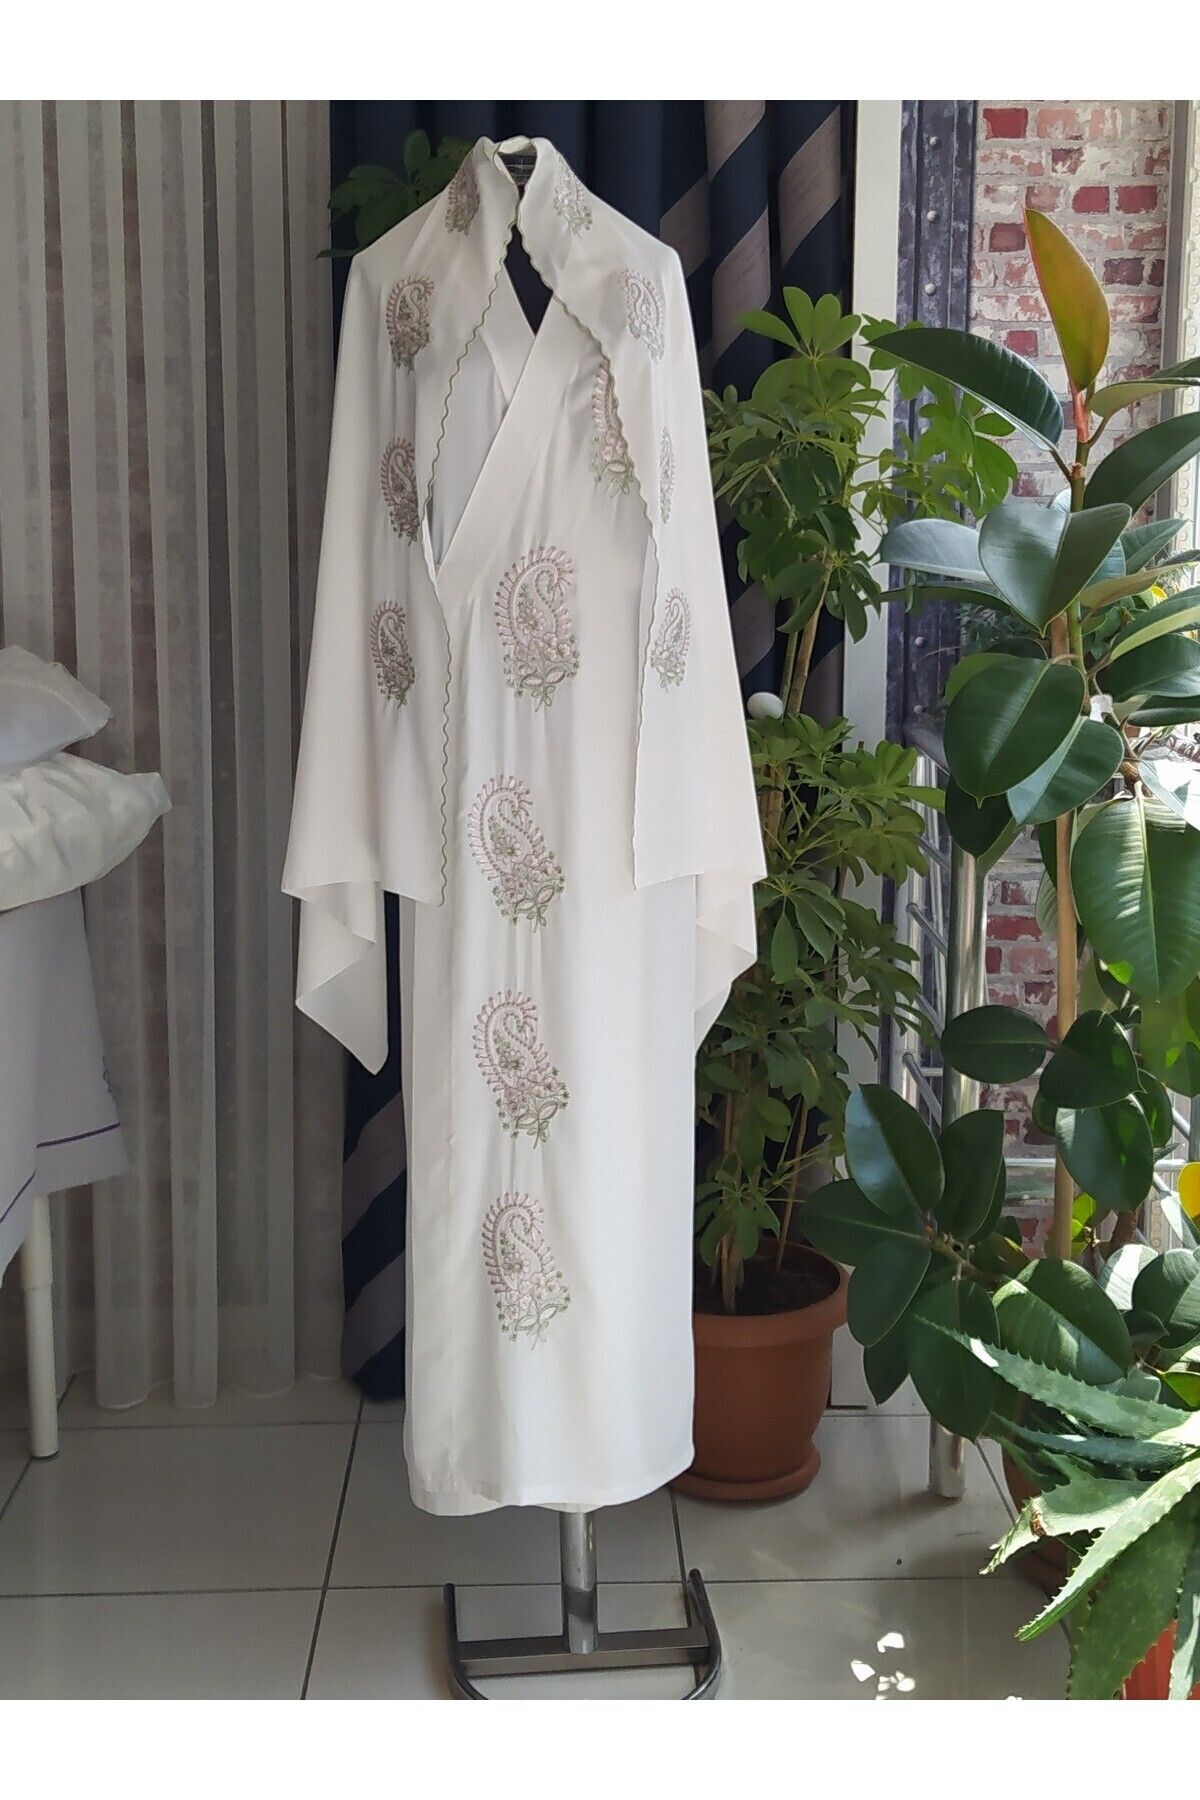 Misue Handmade Medine İpeği Nakışlı Bağlamalı Namaz Elbisesi+Şal, İpek Sabahlık, Çeyizlik Namaz Elbisesi & Sabahlık